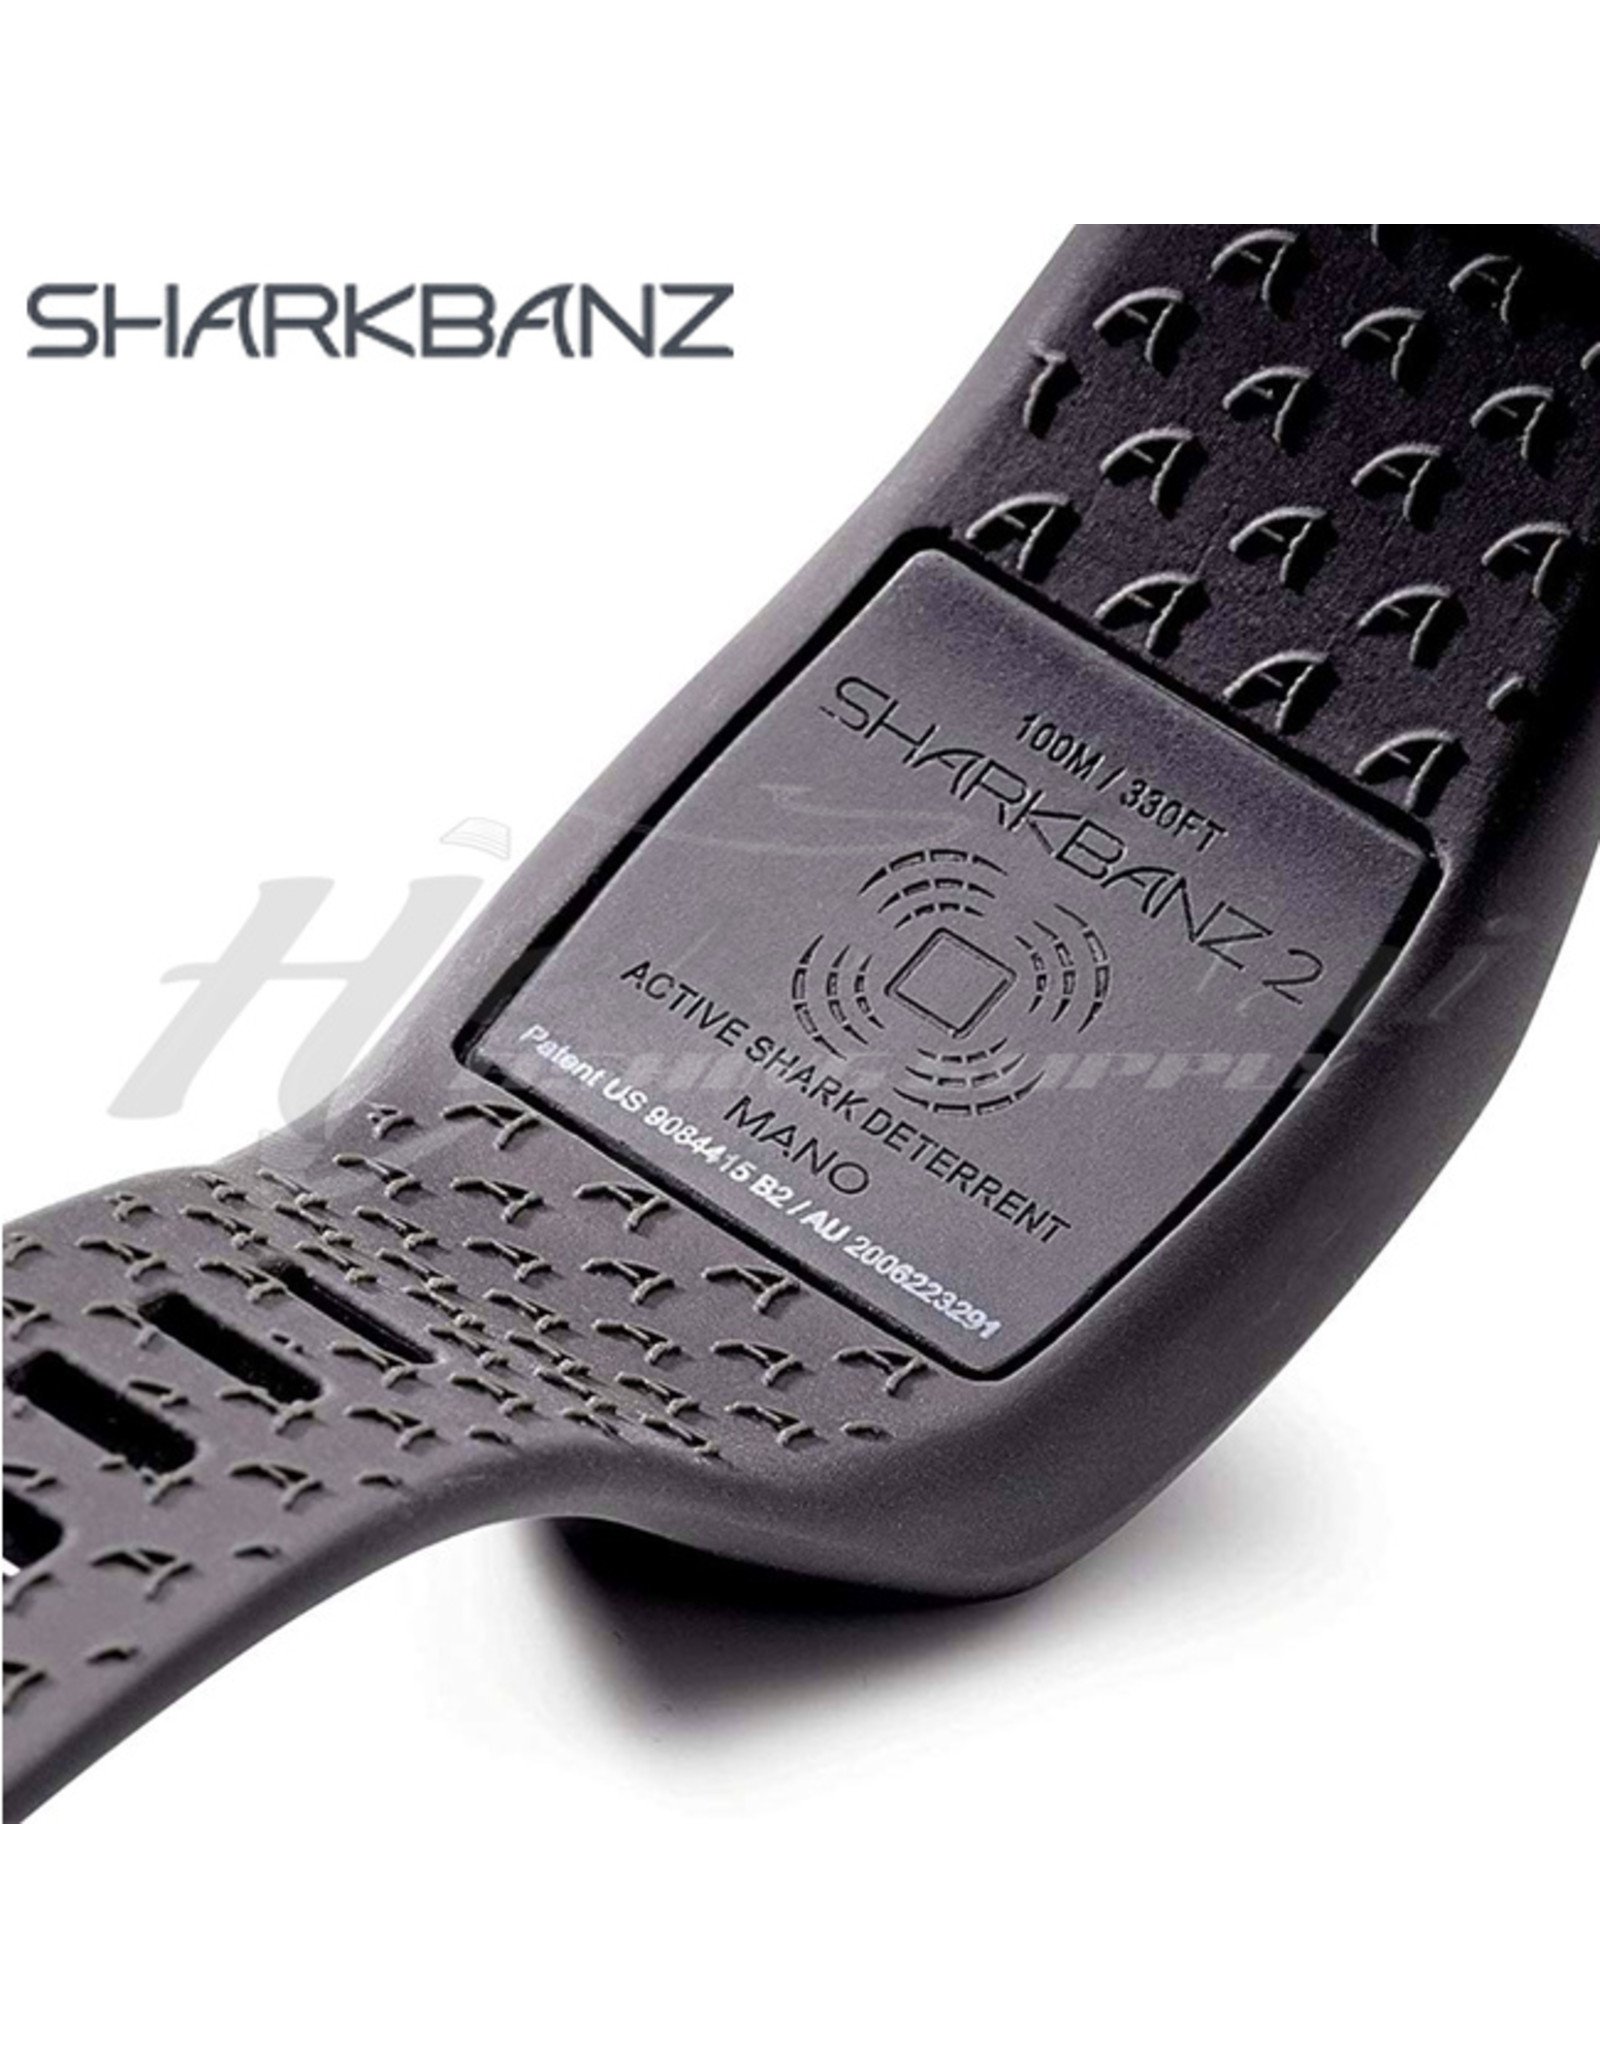 SHARKBANZ SHARKBANZ, Active Shark Deterrent Band, White/Seafoam